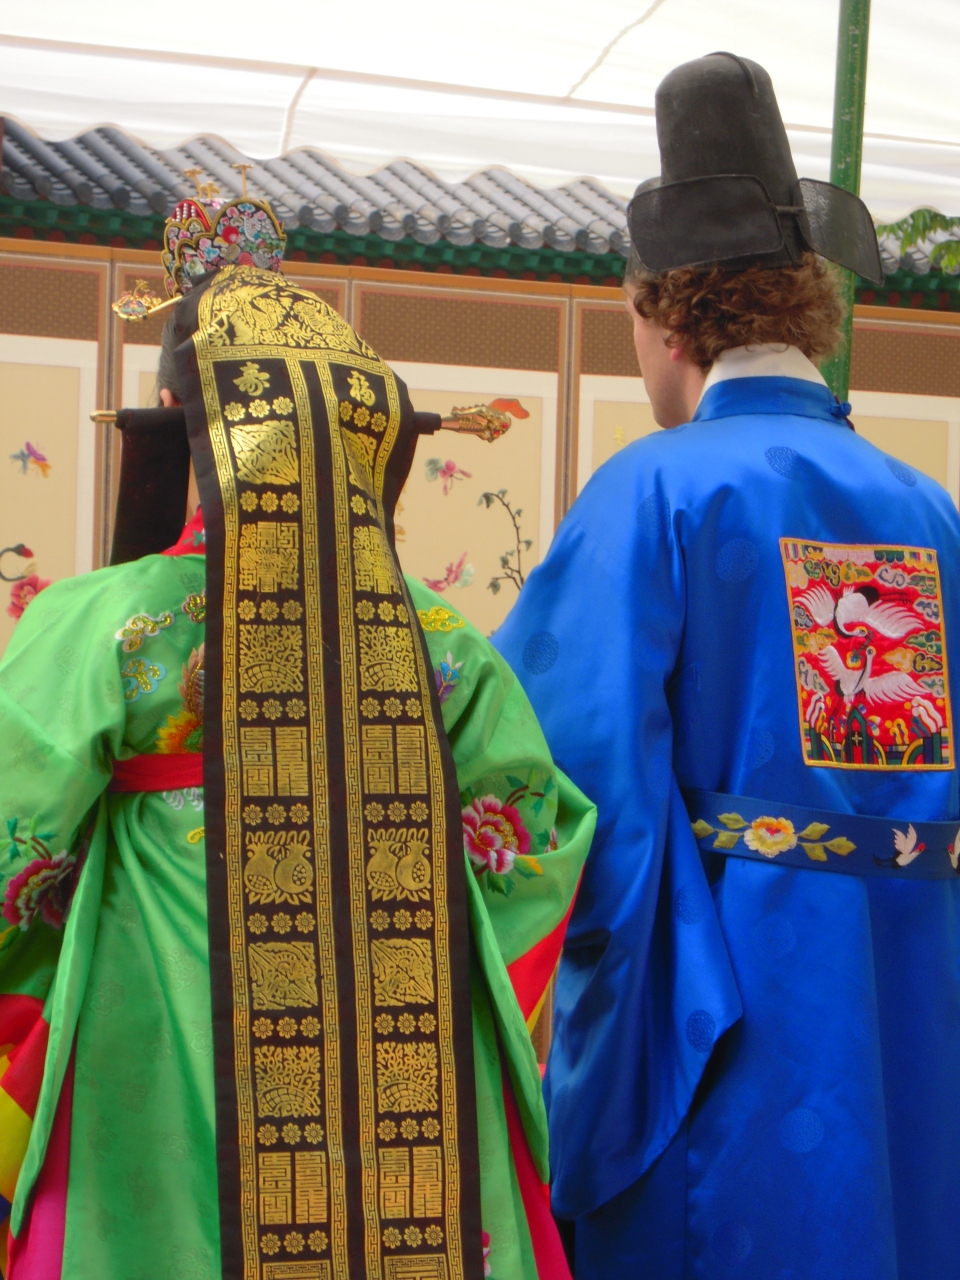 韓国伝統結婚式の旅 ソウル 韓国 の旅行記 ブログ By しまこさん フォートラベル